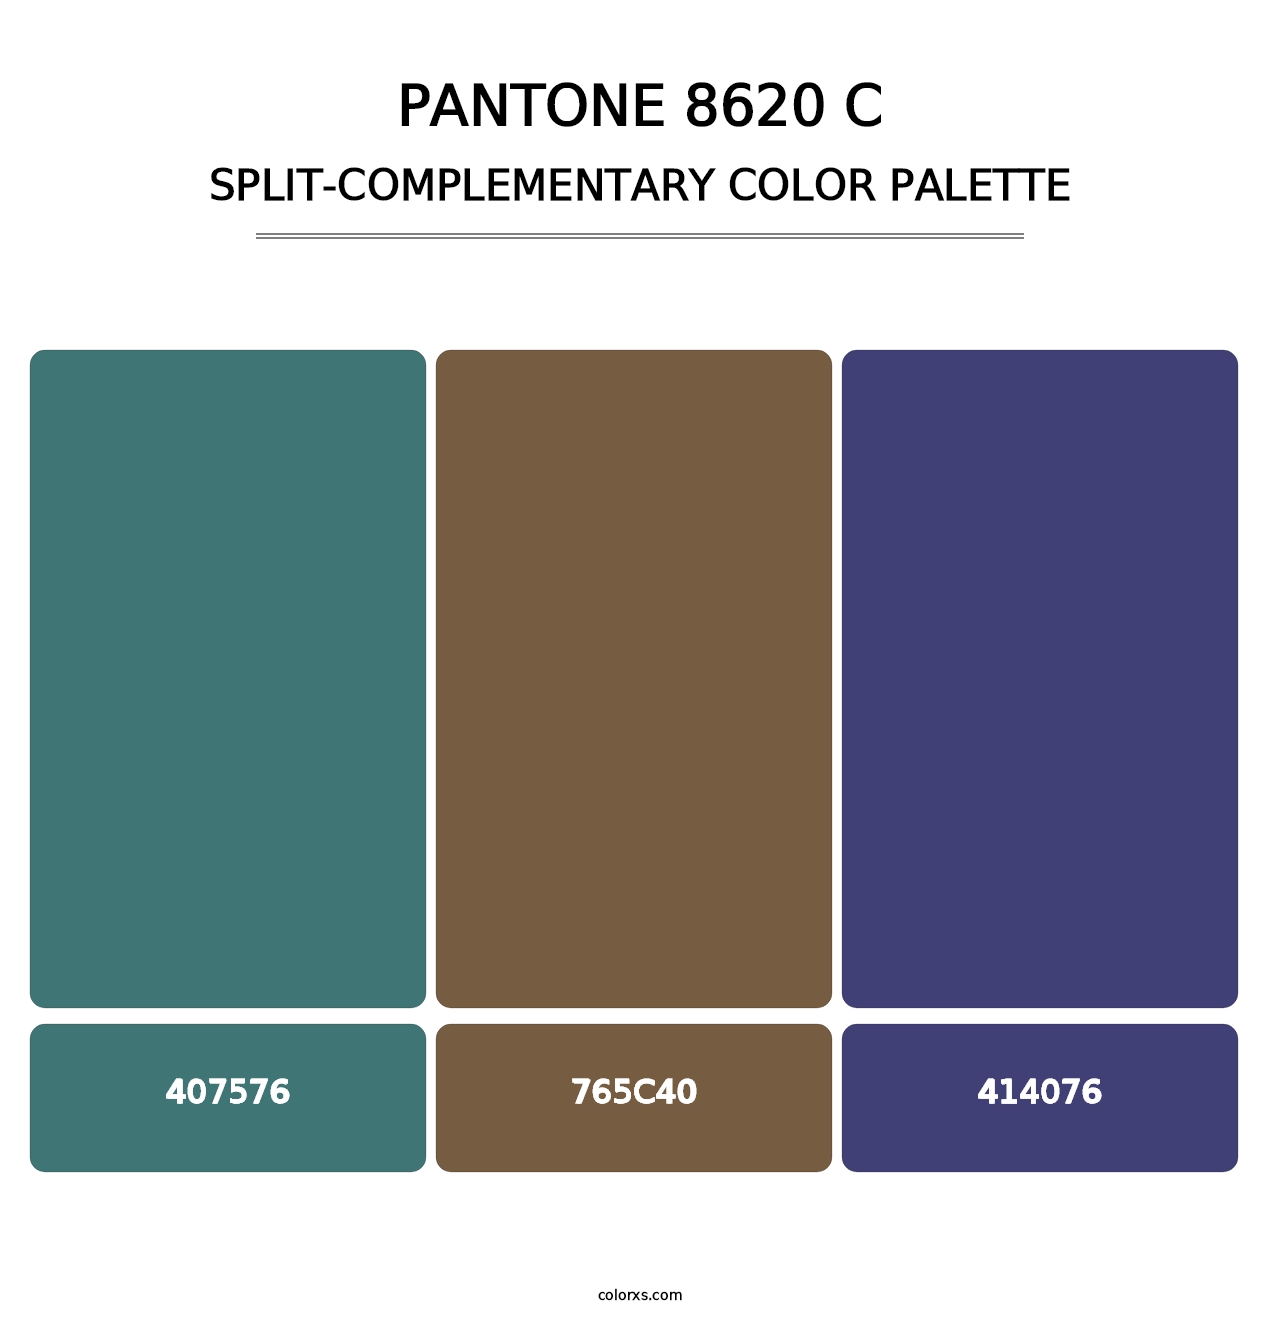 PANTONE 8620 C - Split-Complementary Color Palette